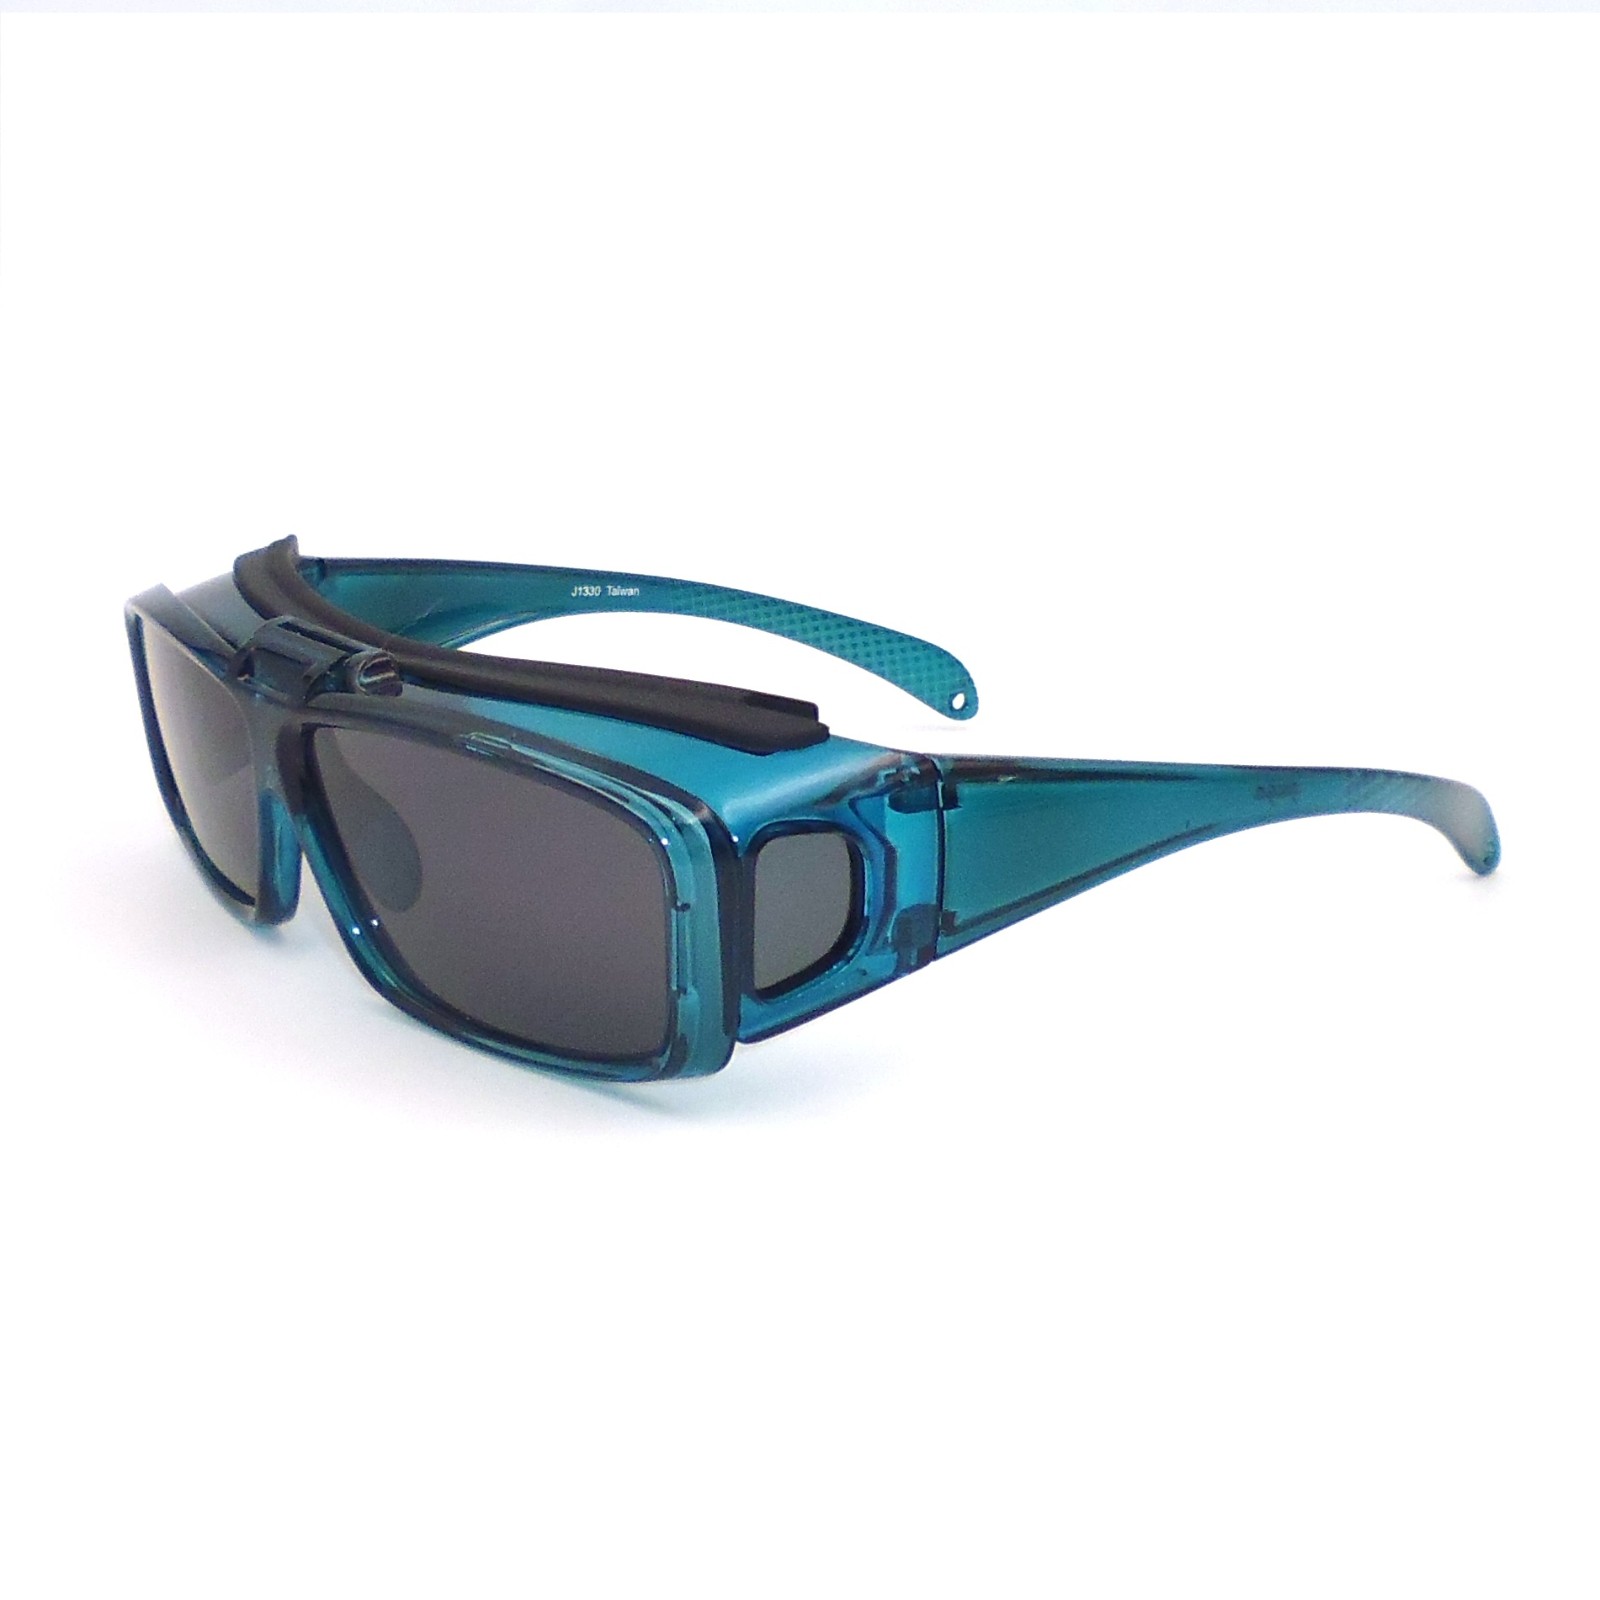 Flip up lens fit over sunglasses, special function -flip up lens and side lens, over specs with side lens-J1330